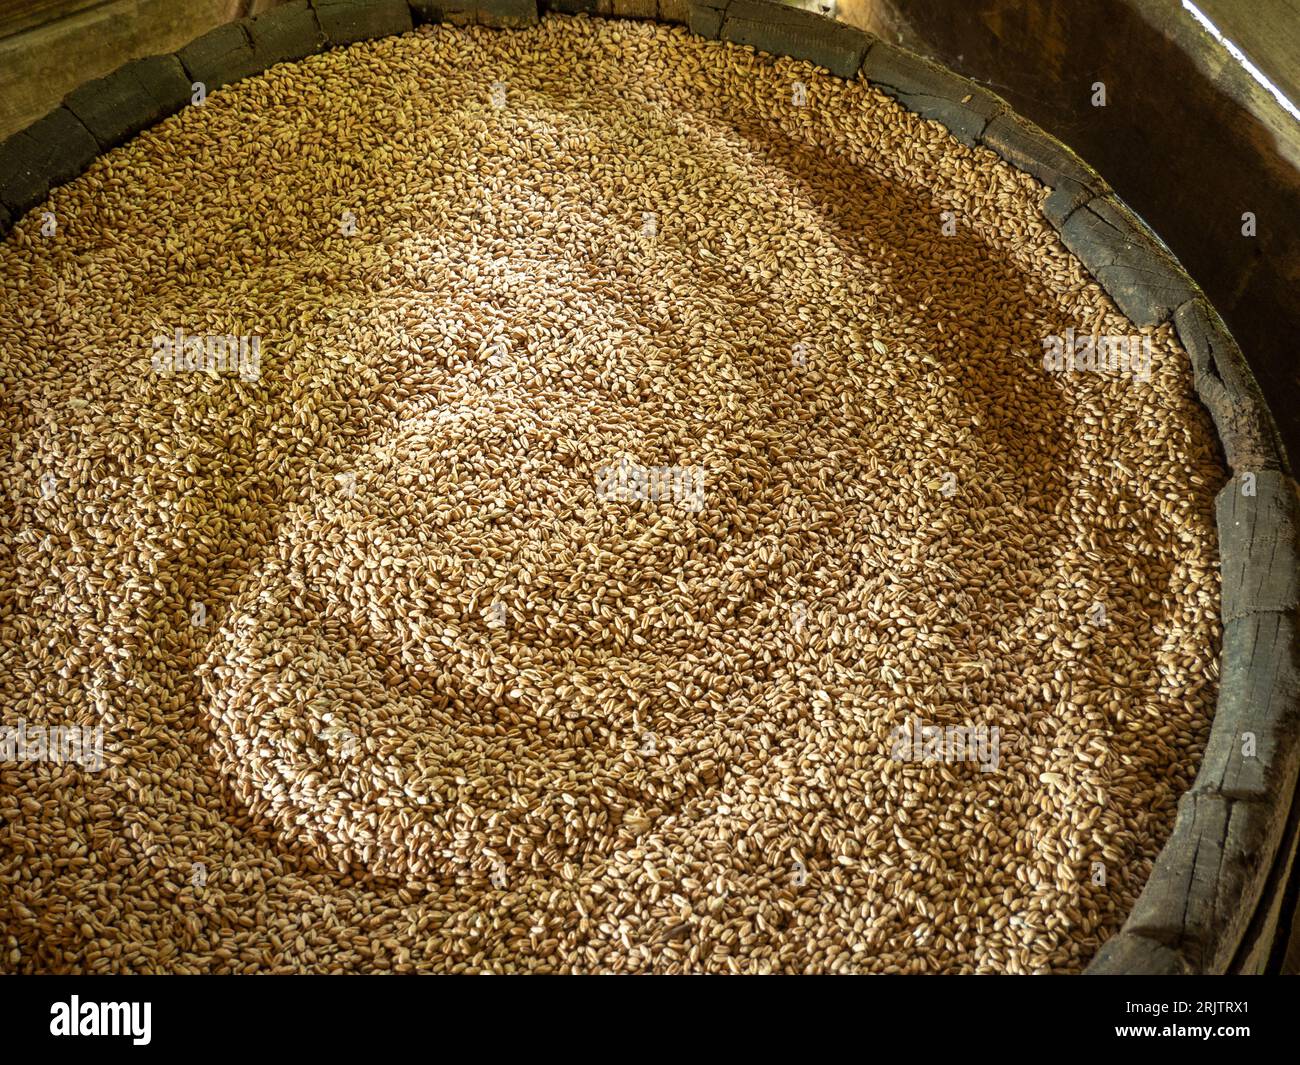 baril de stockage plein de grain récolté Banque D'Images